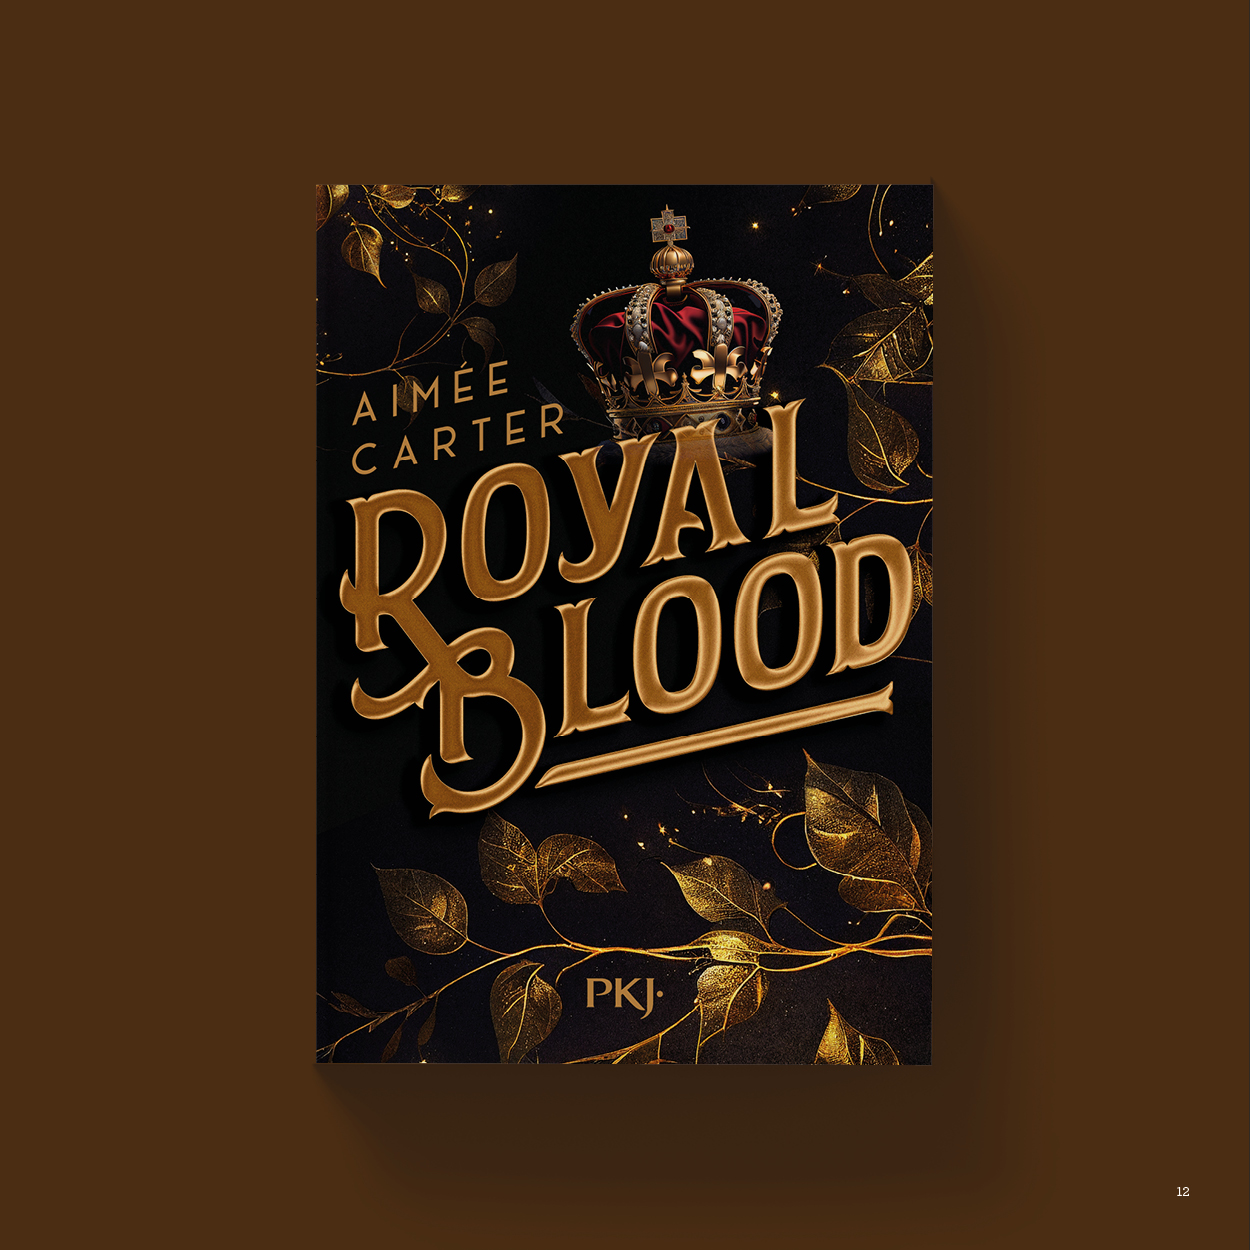 Vue_Royal_blood_12